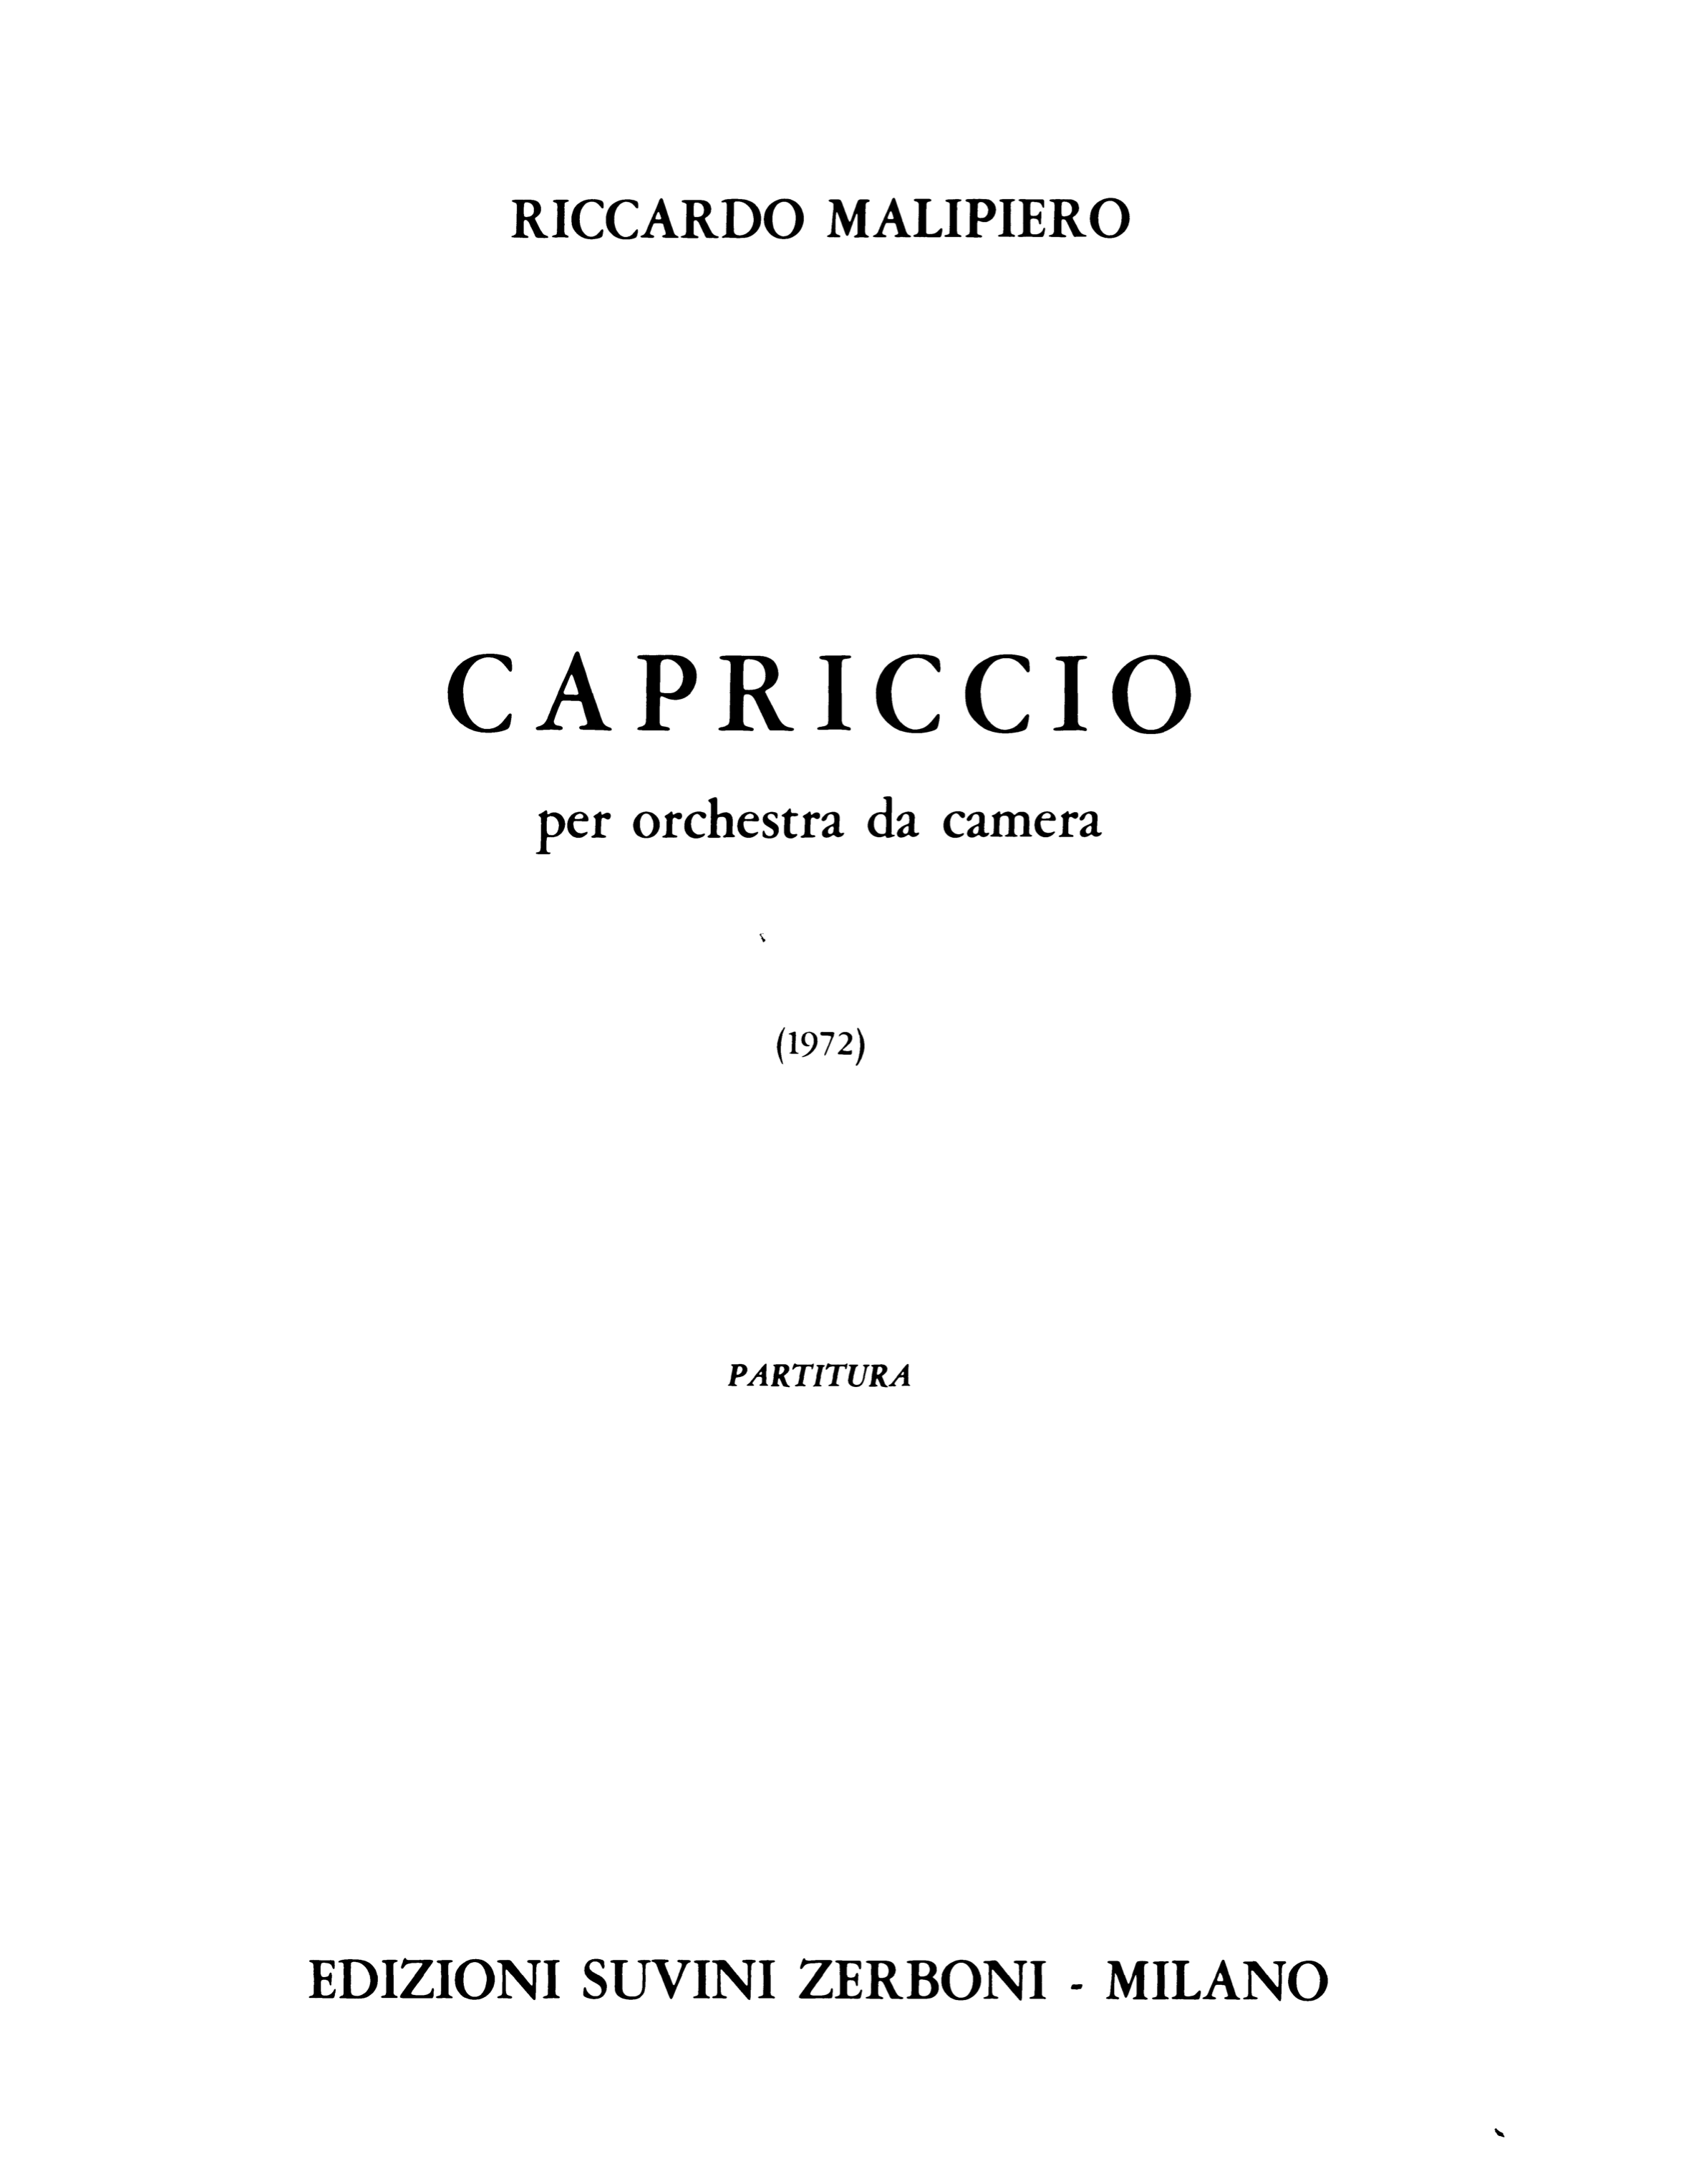 Capriccio_Malipiero Riccardo 1